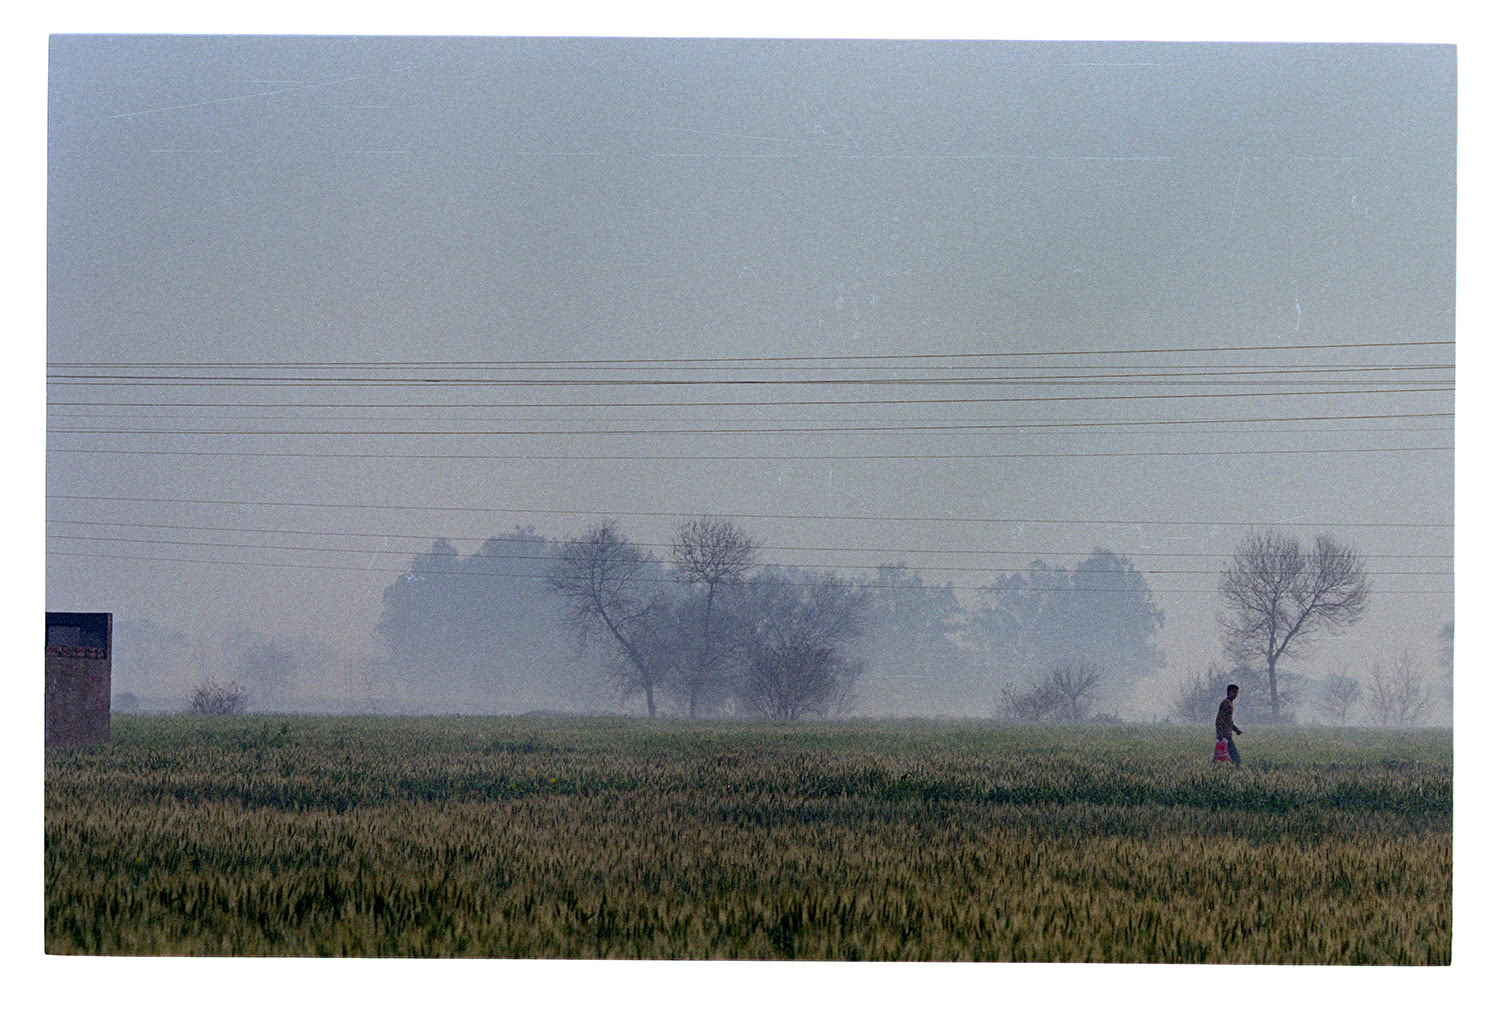 Man walking amongst Punjab agriculture